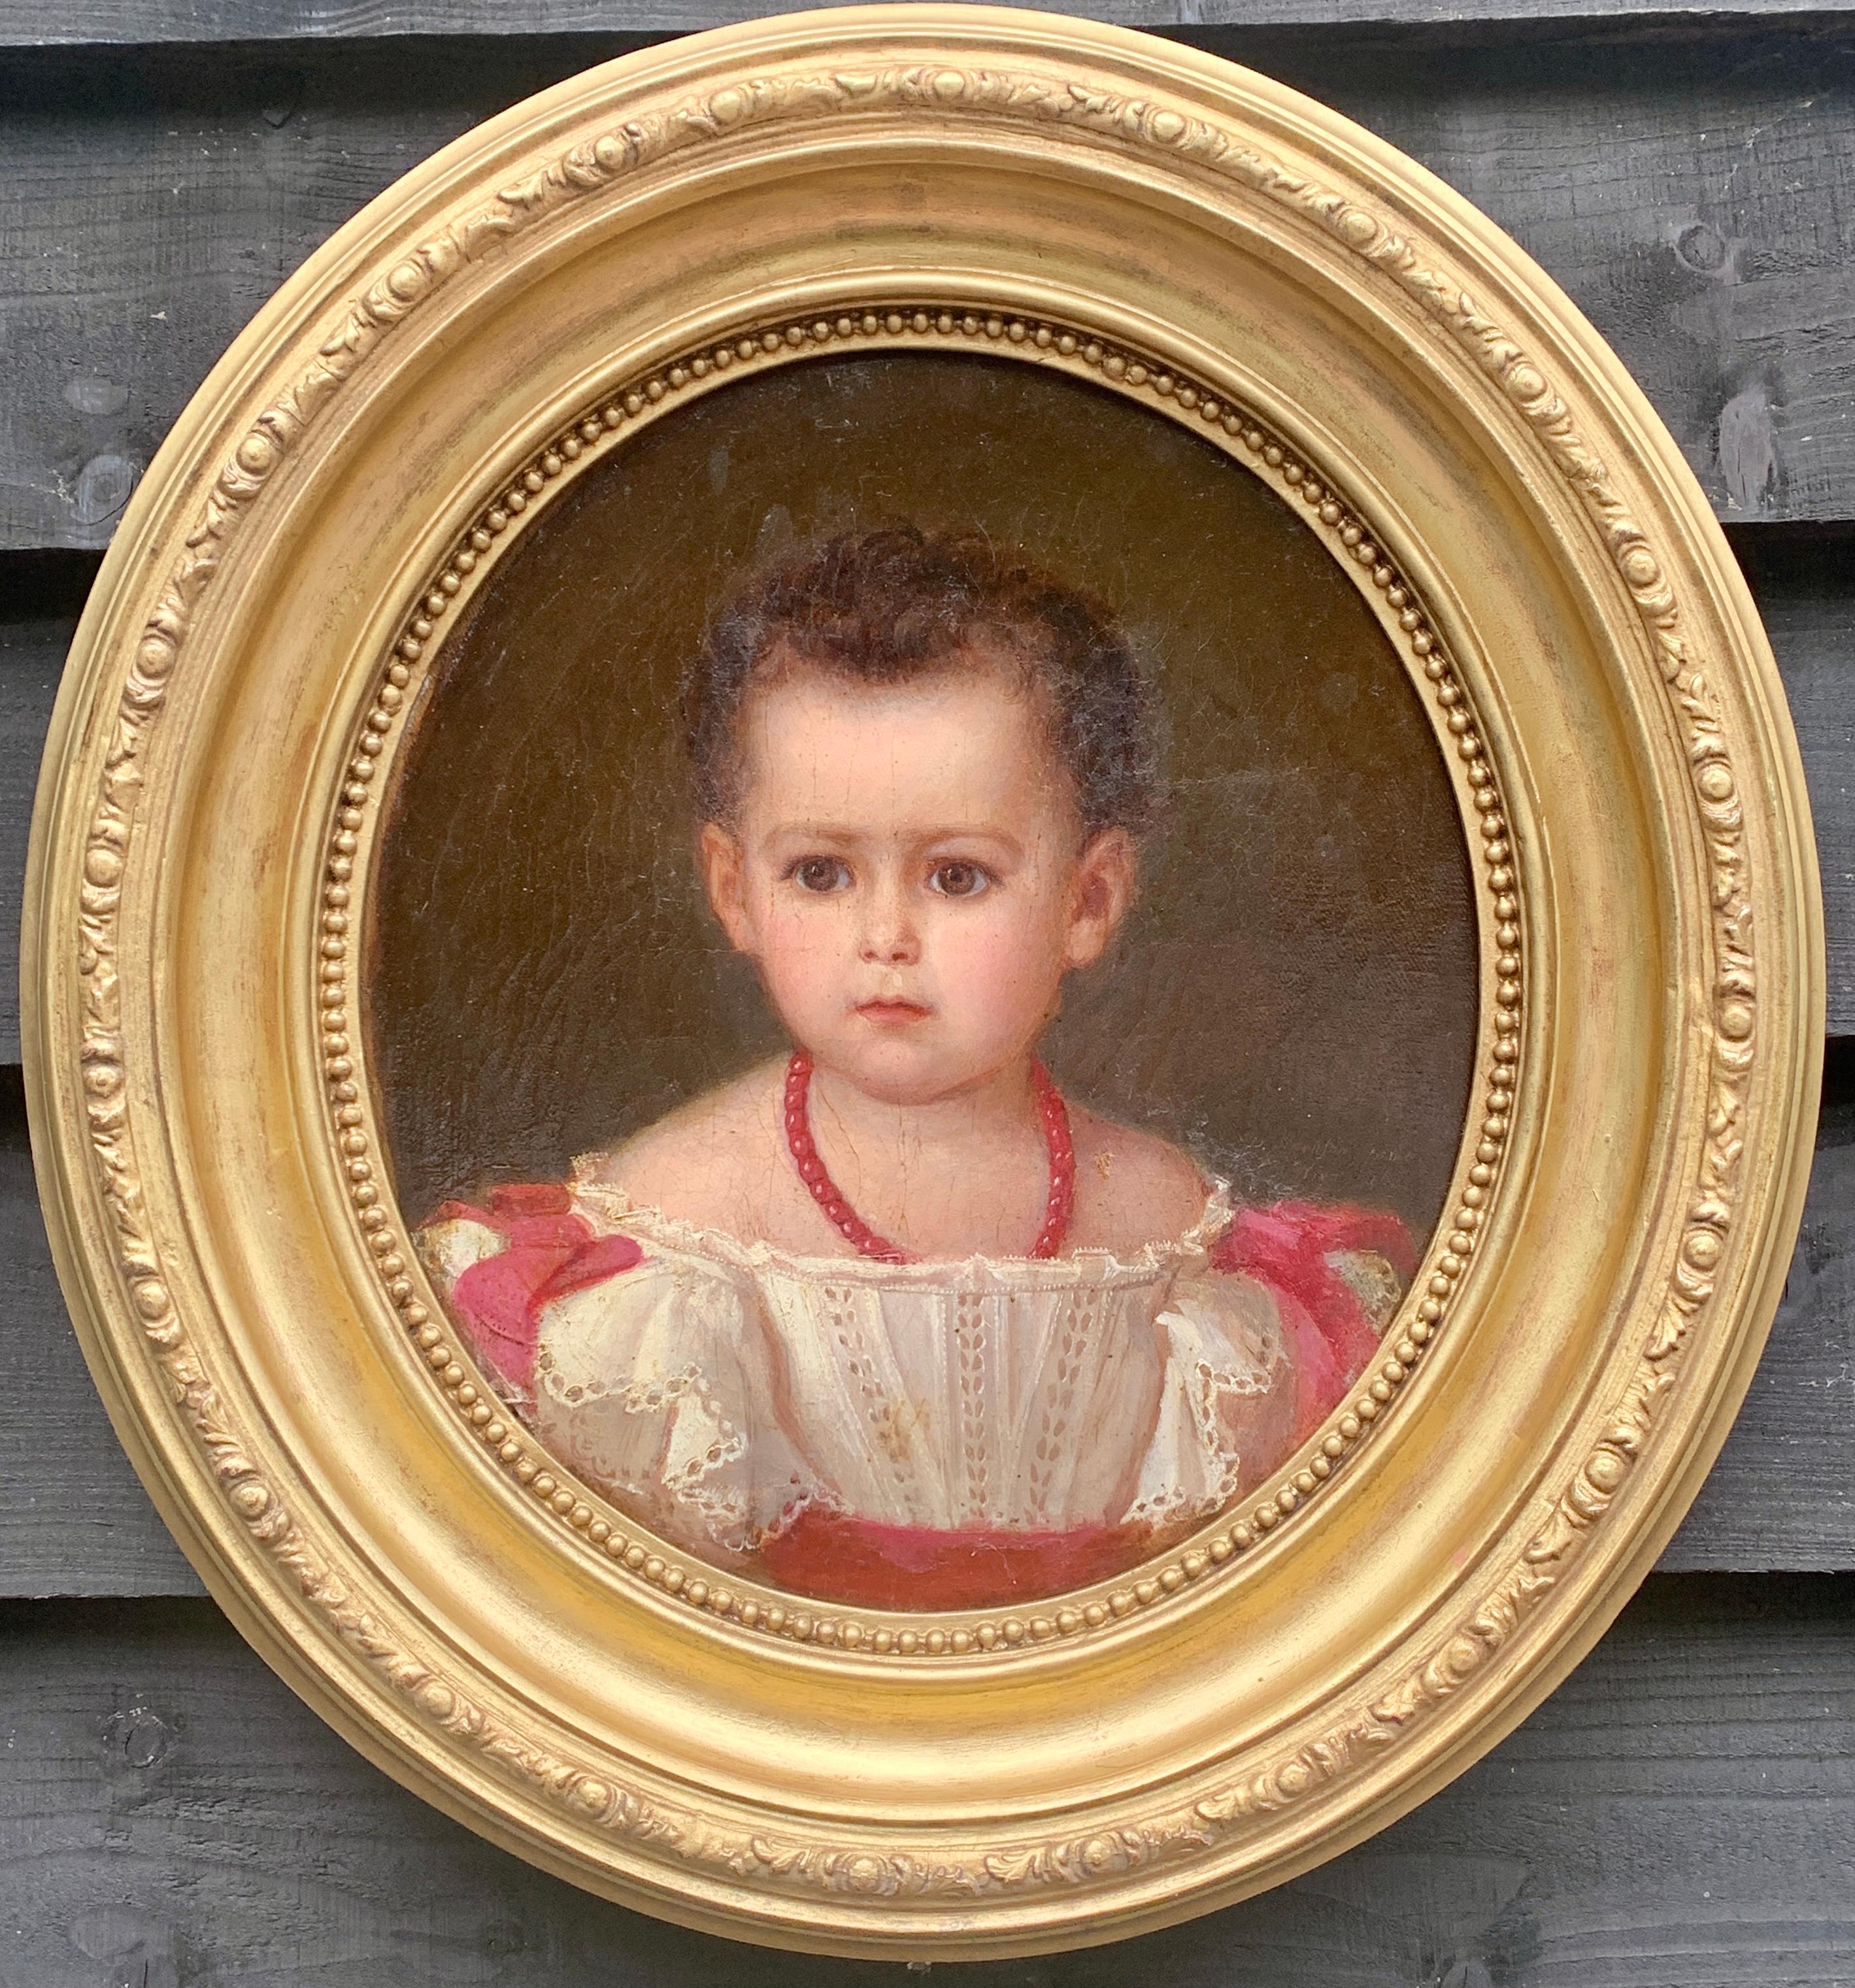 Österreichisches Porträt eines jungen Mädchens in weißem Kleid mit roten Schleifen aus dem 19. Jahrhundert